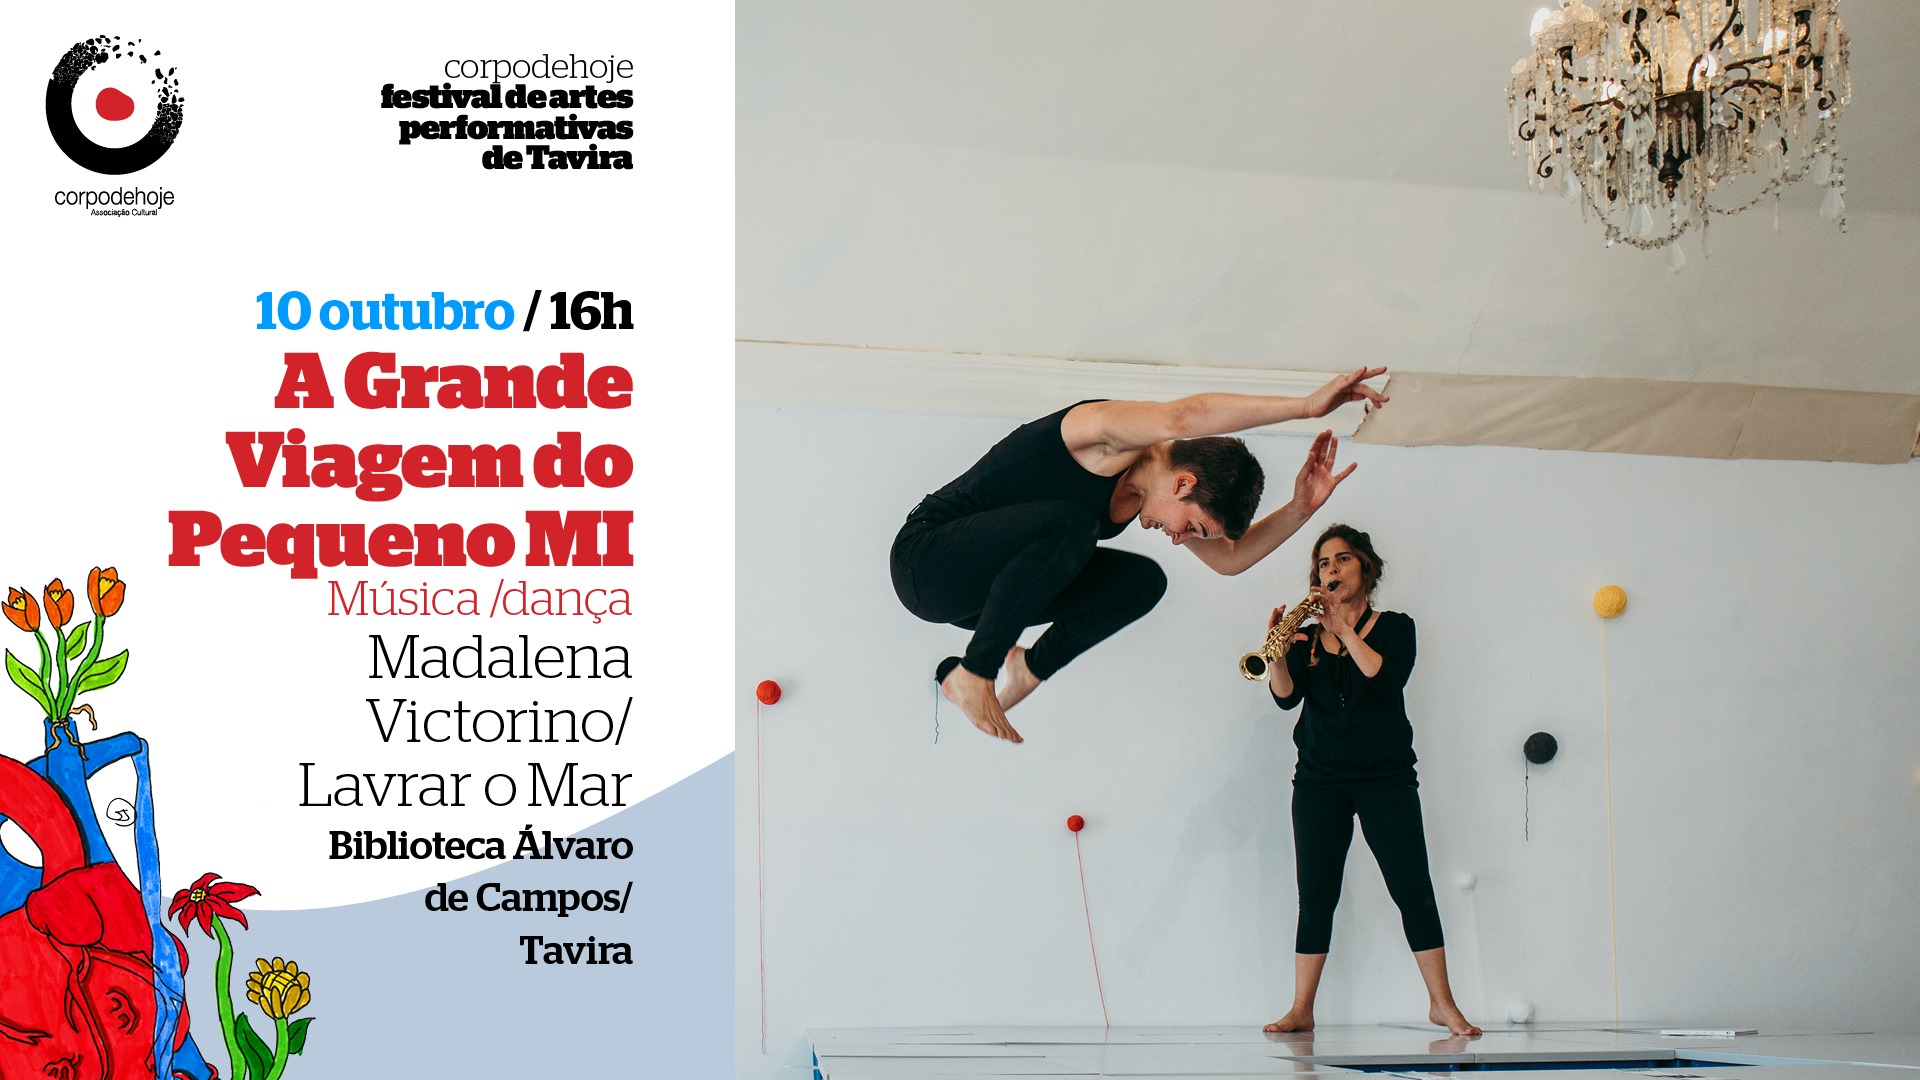 A Grande Viagem do pequeno MI | CORPO DE HOJE festival de artes performativas de Tavira 2021